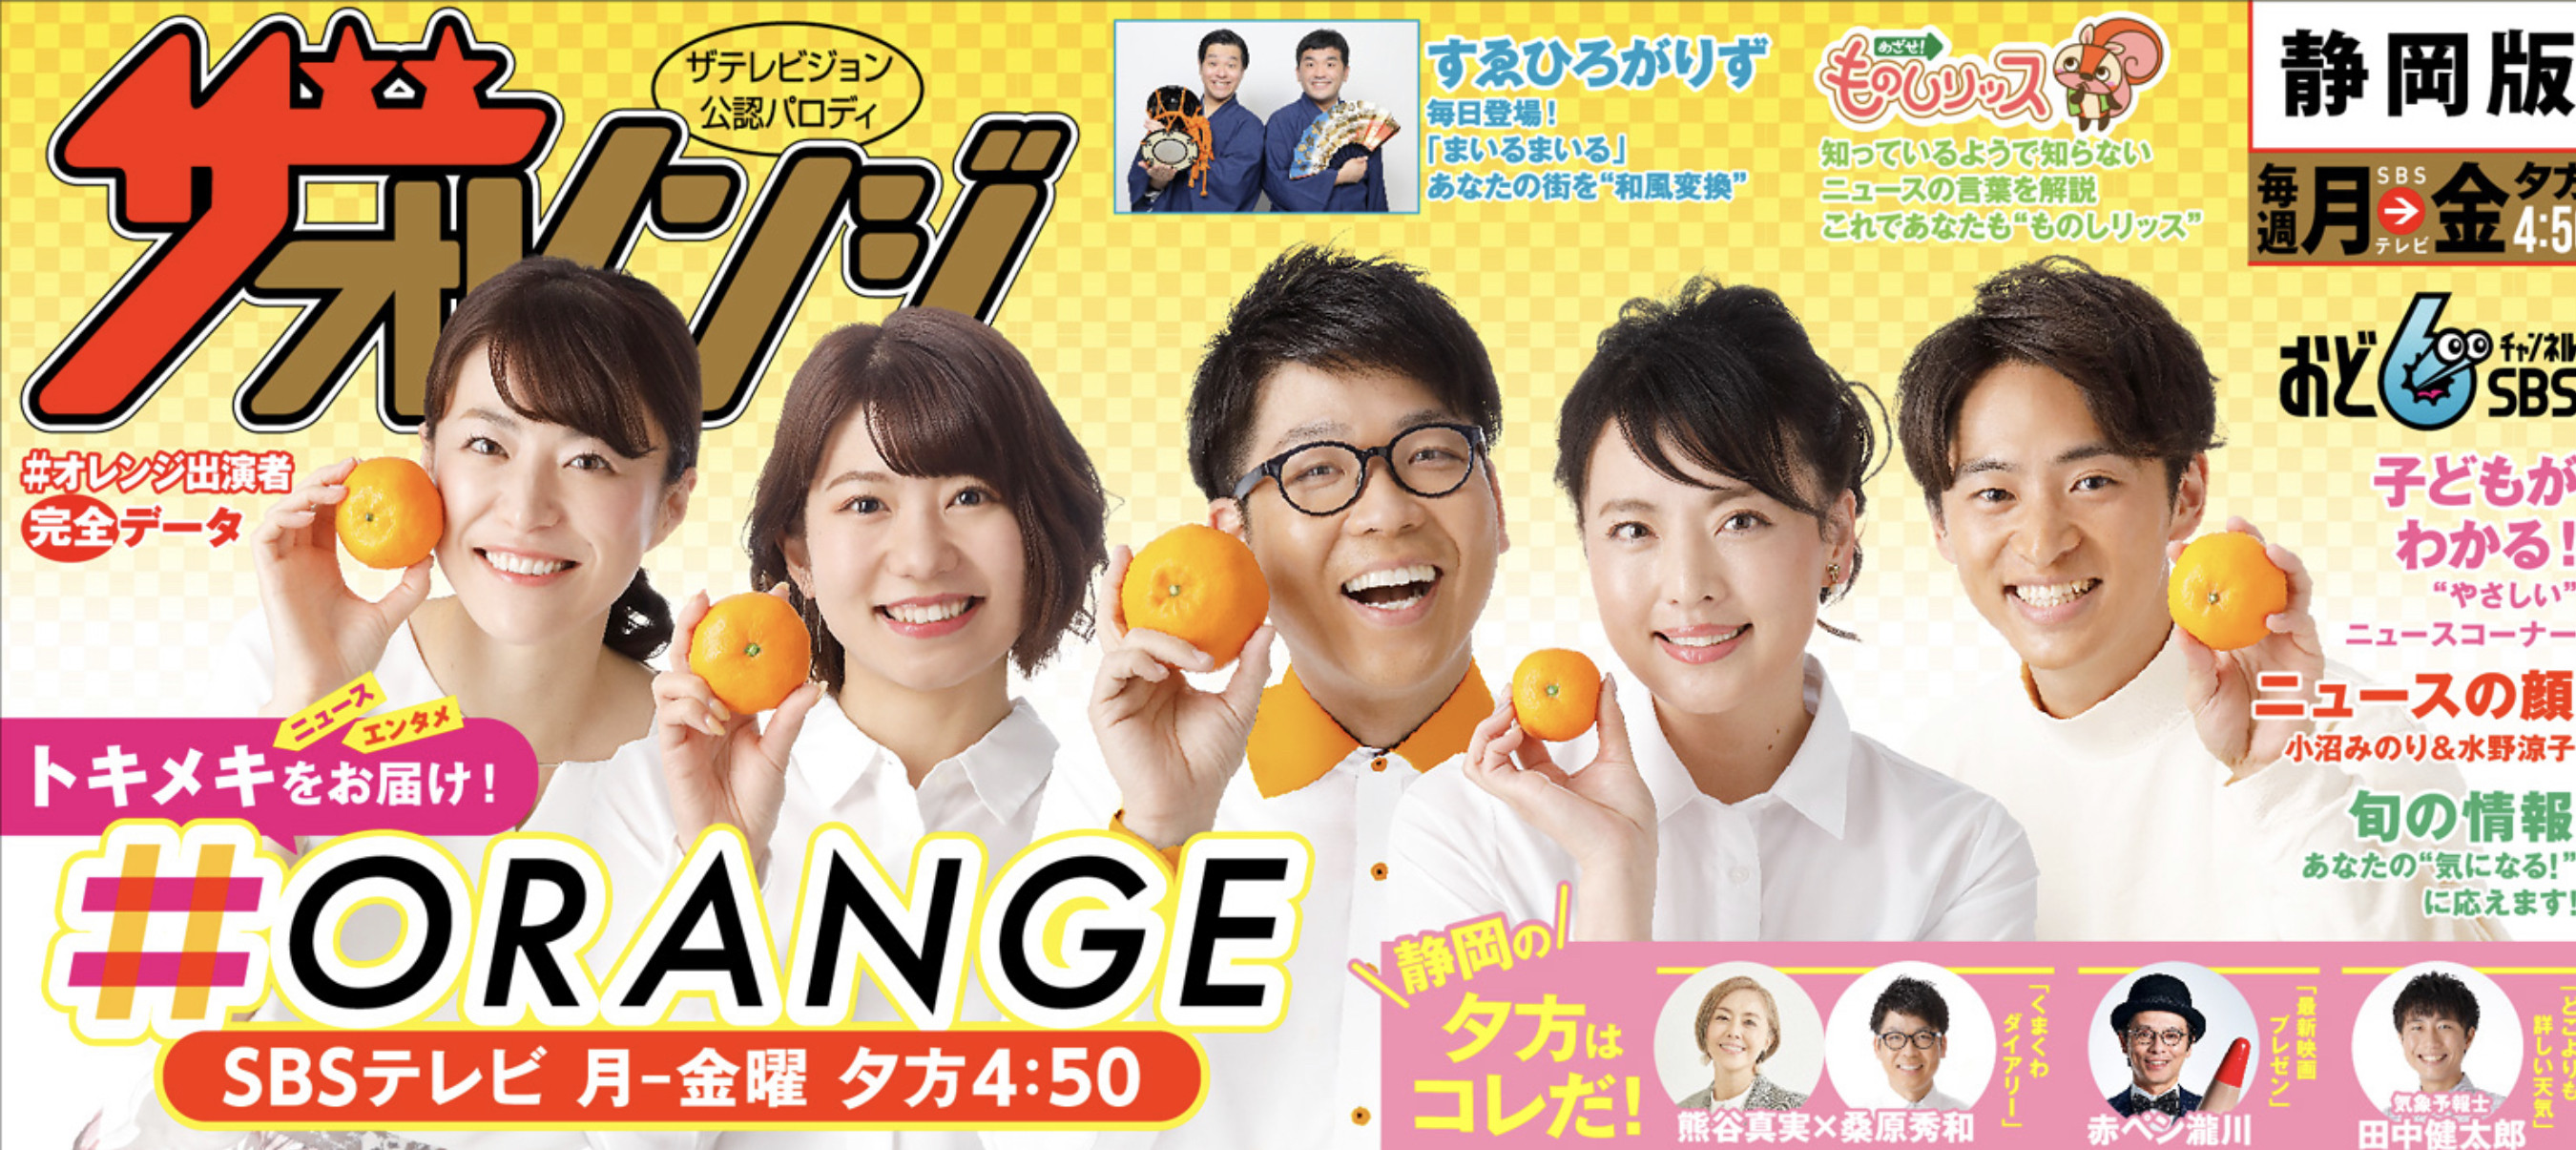 SBS TV 「オレンジ」という夕方の情報番組に出ます！！